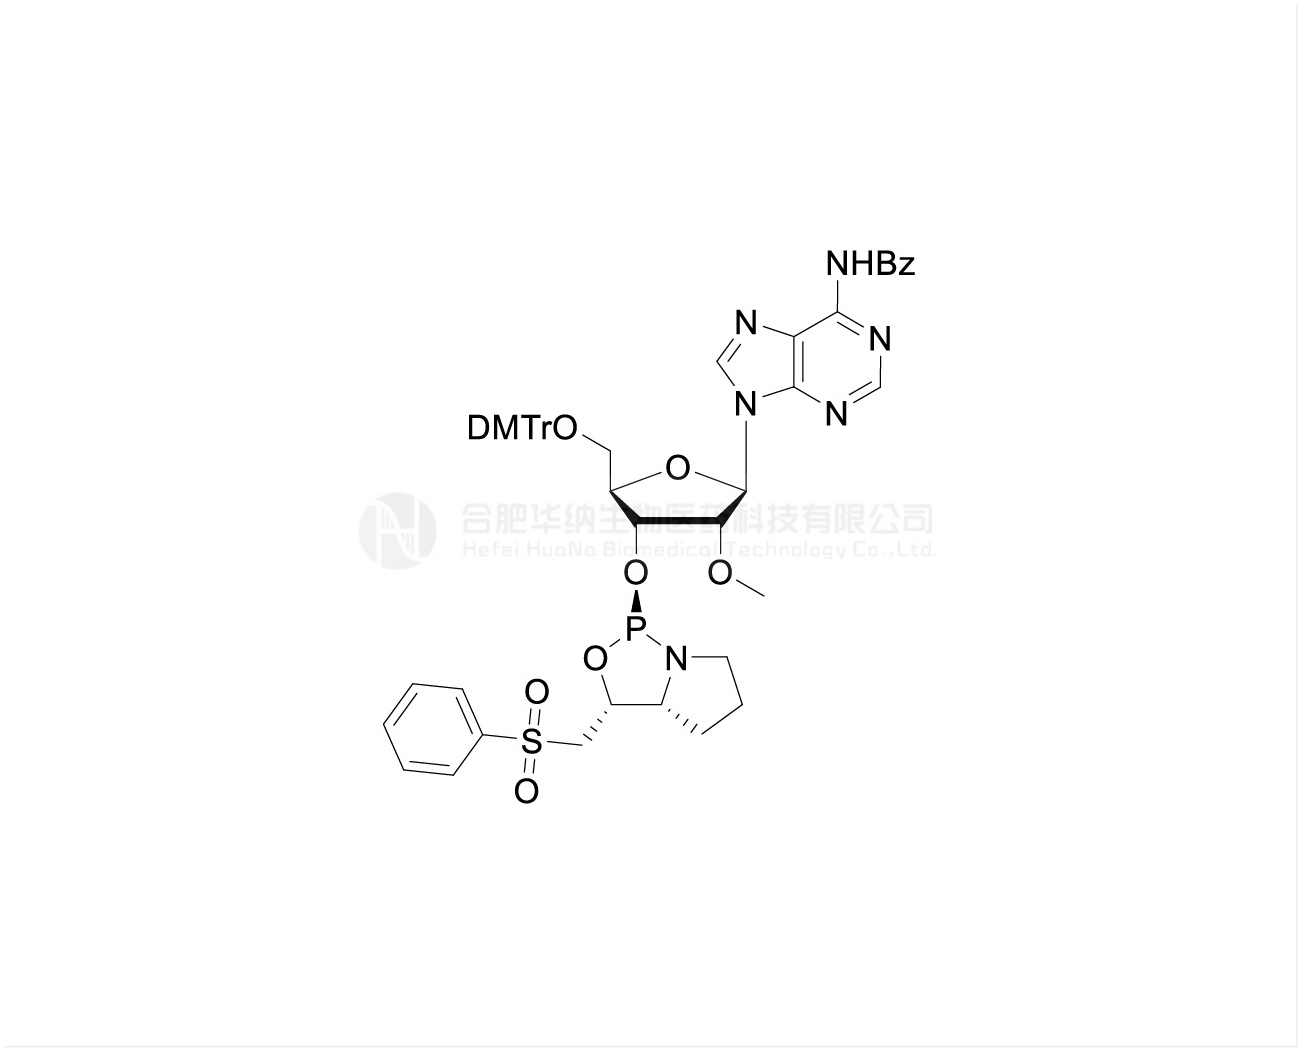 DMTr-2'-O-Me-rA(Bz)-3'-(D)-PSM-Phosphoramidite